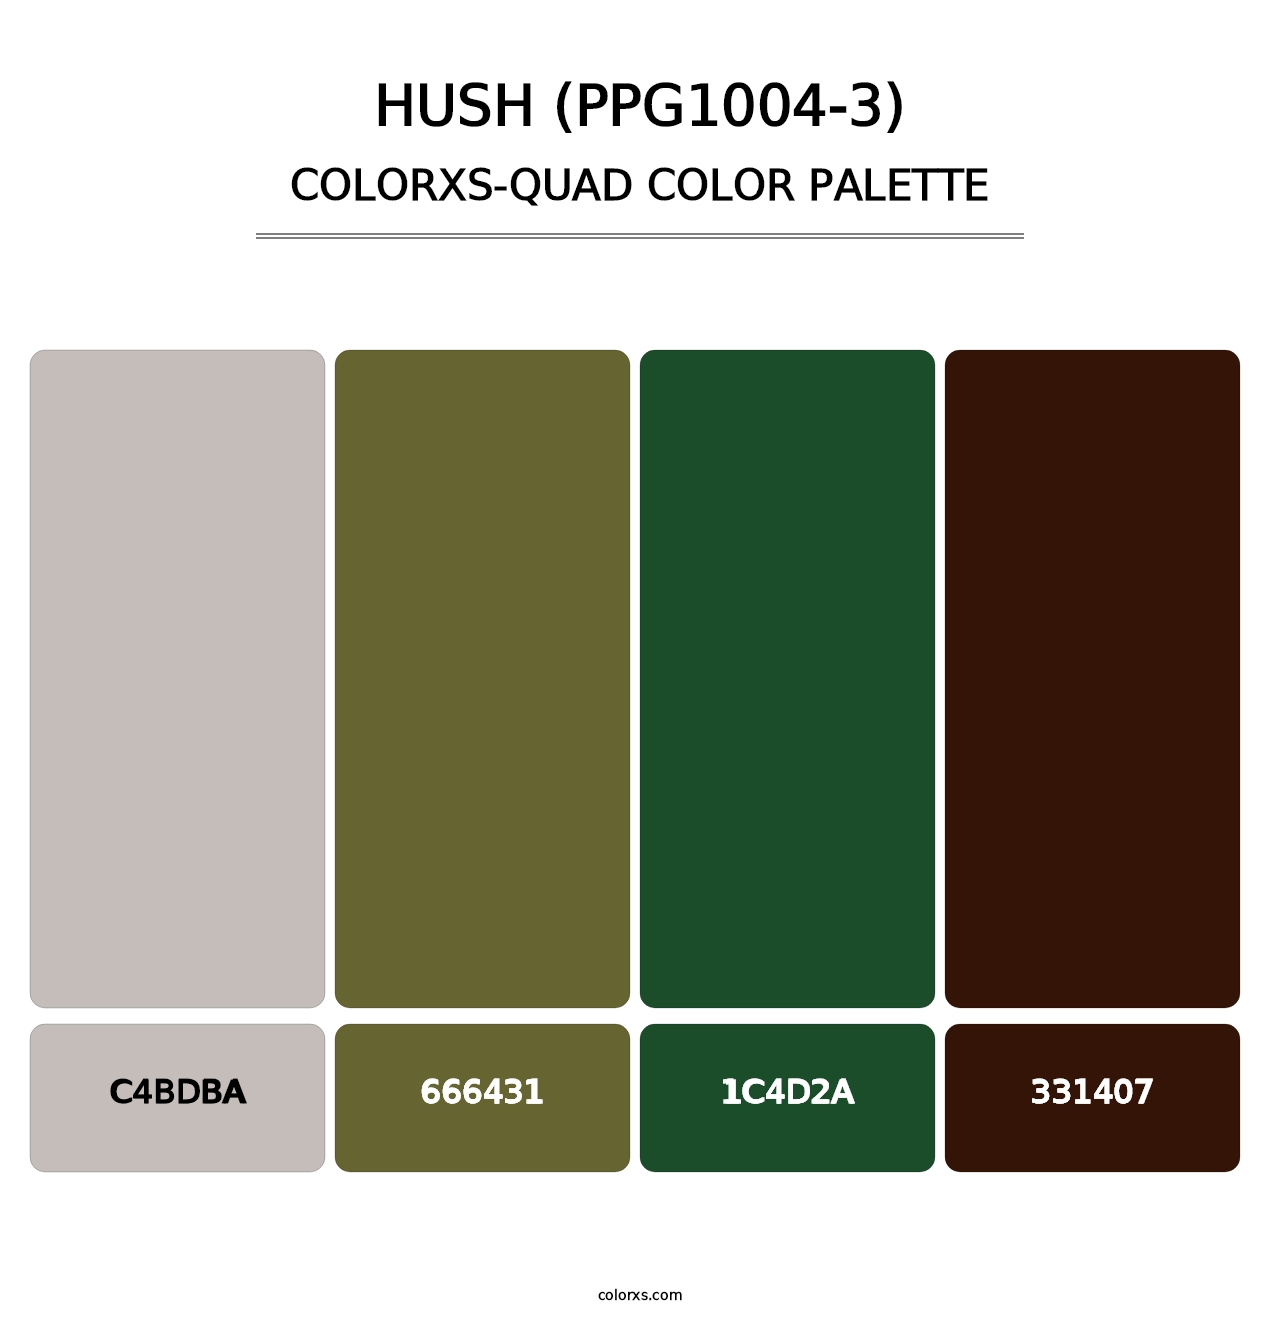 Hush (PPG1004-3) - Colorxs Quad Palette